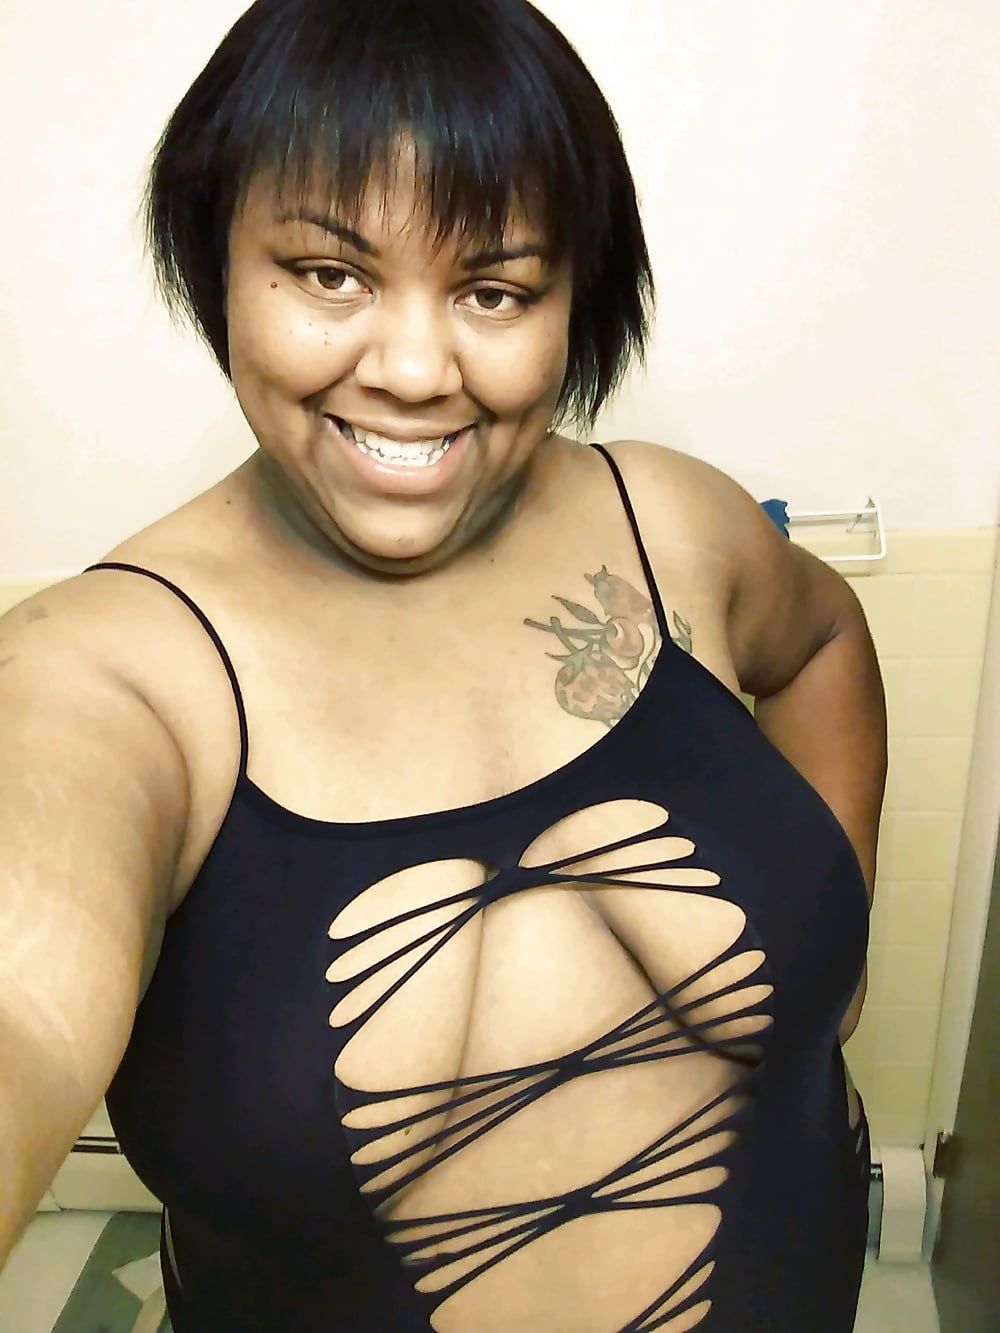 I'm Big Titty Tiara Danielle Cox Detroit MI #13